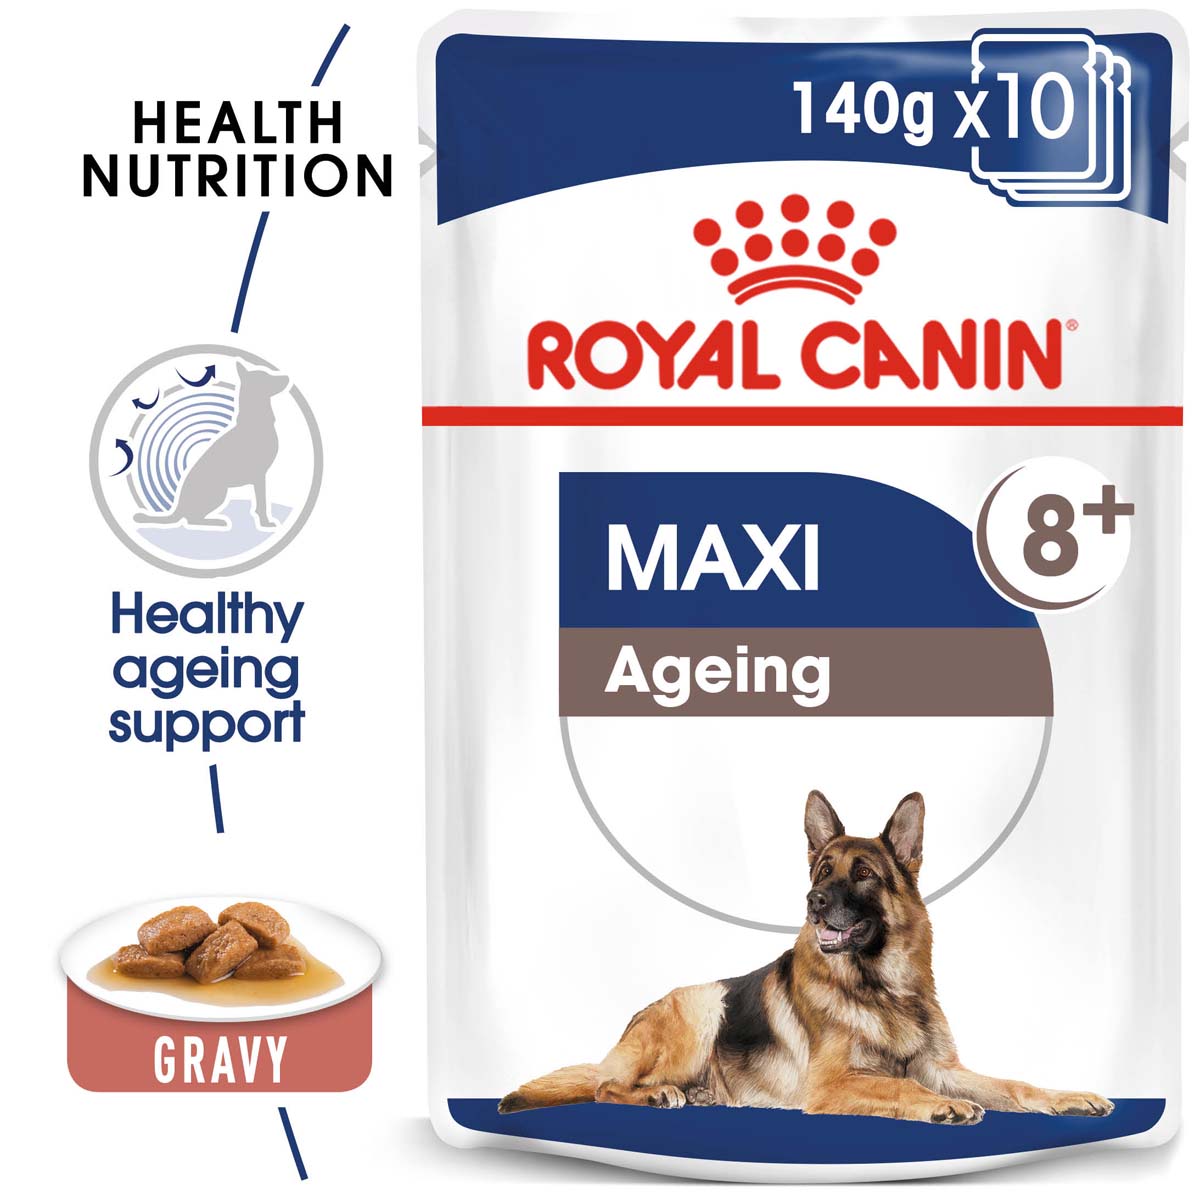 ROYAL CANIN MAXI Ageing 8+ mokré krmivo pro starší velké psy